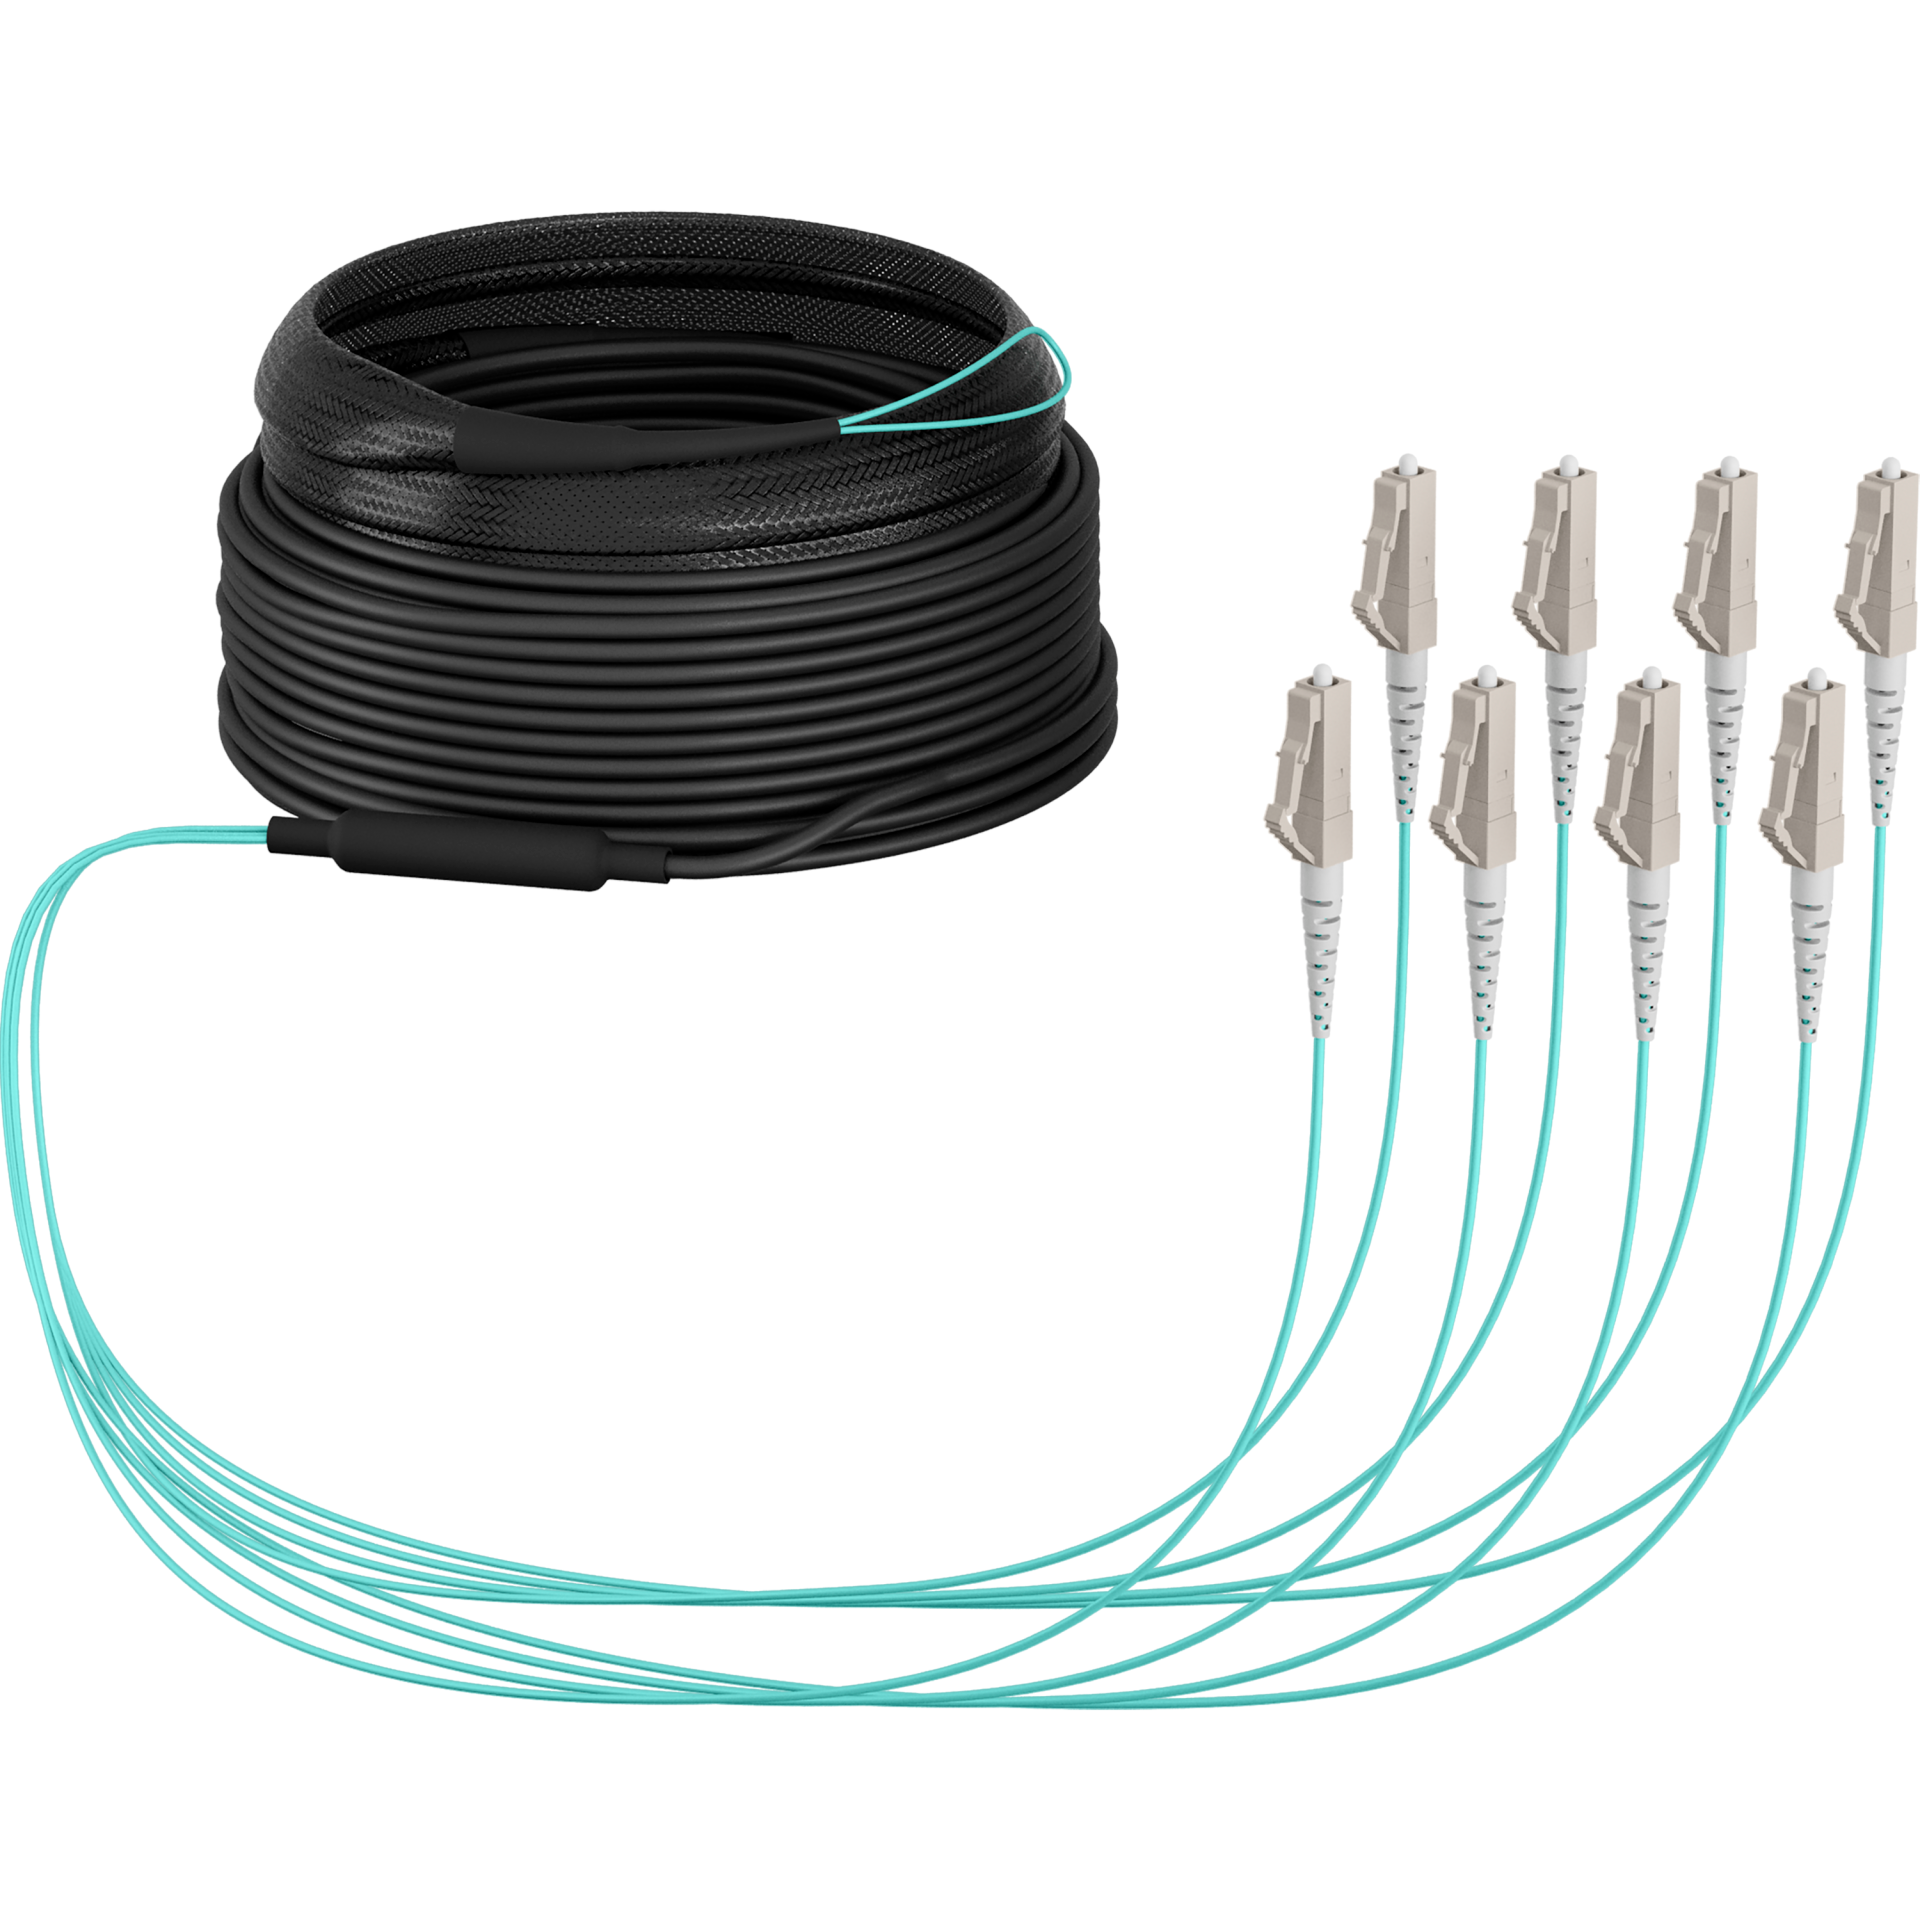 Trunk cable U-DQ(ZN)BH OM3 8G (1x8) LC-LC,40m Dca LSZH